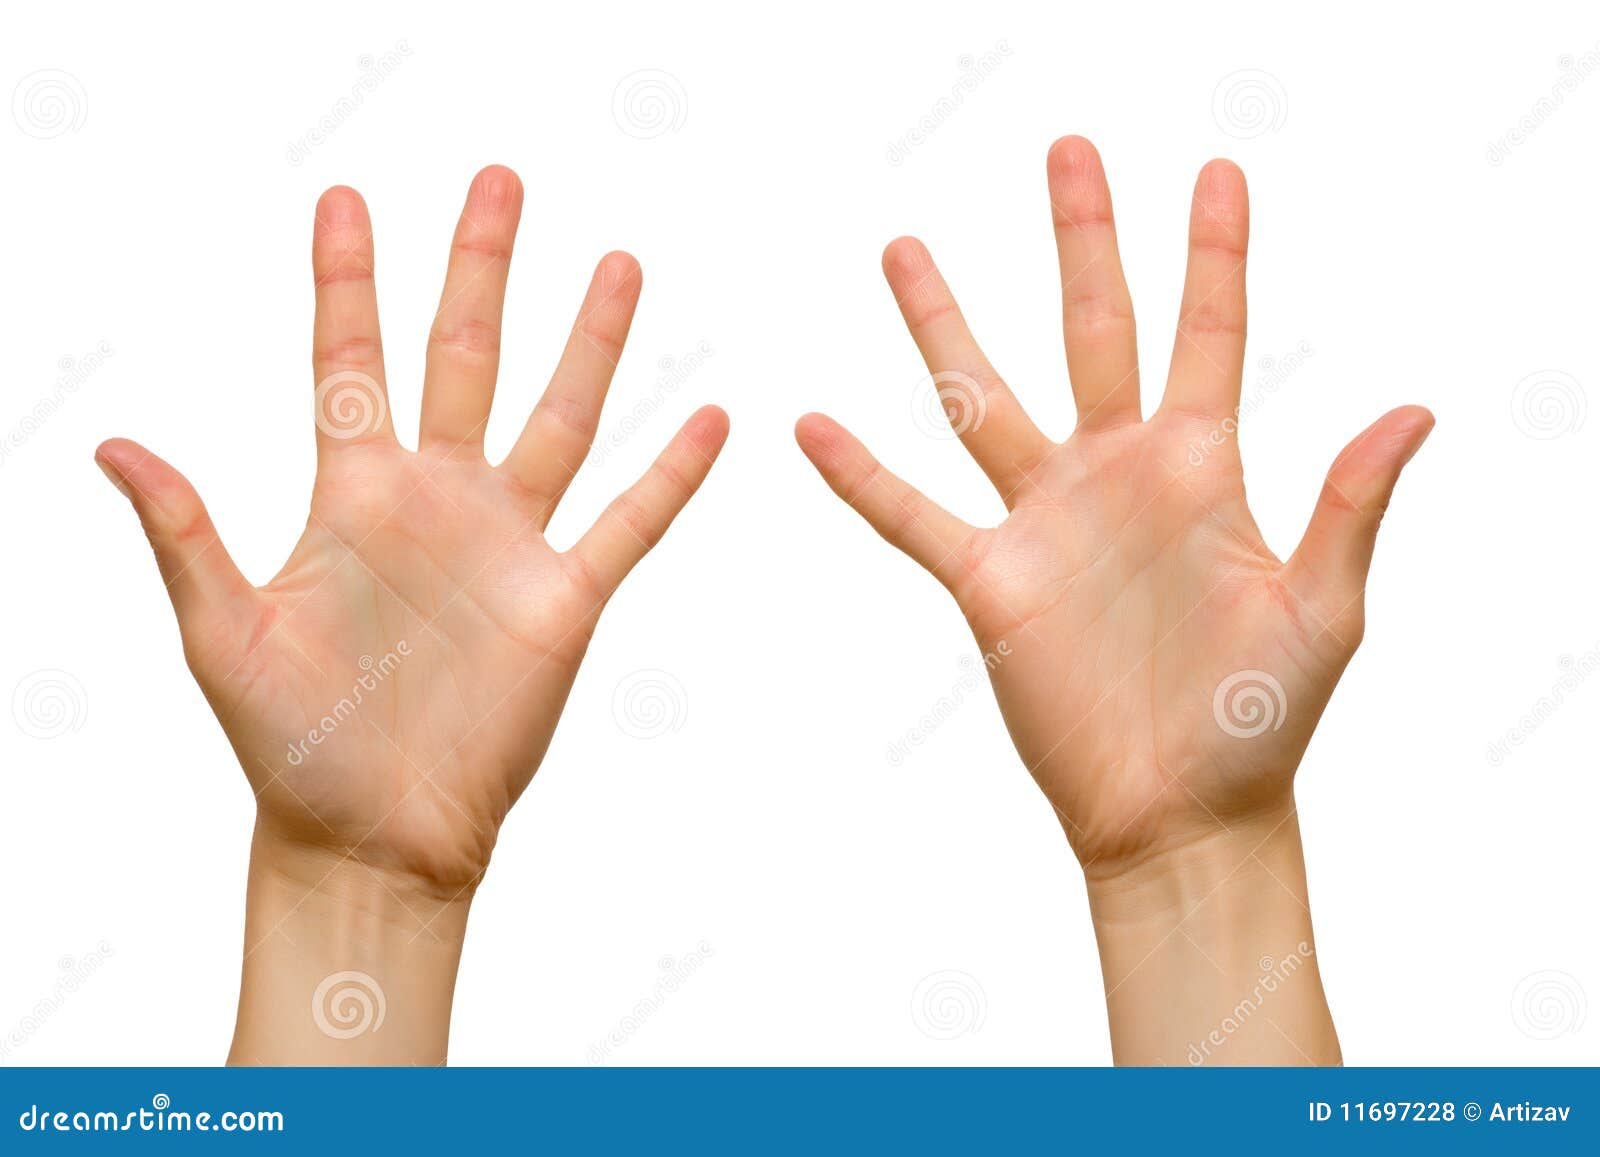 Без ладони. Женские руки правая и левая. Левая рука ребенка. Ладони сверху и снизу. 10 См на пальцах.